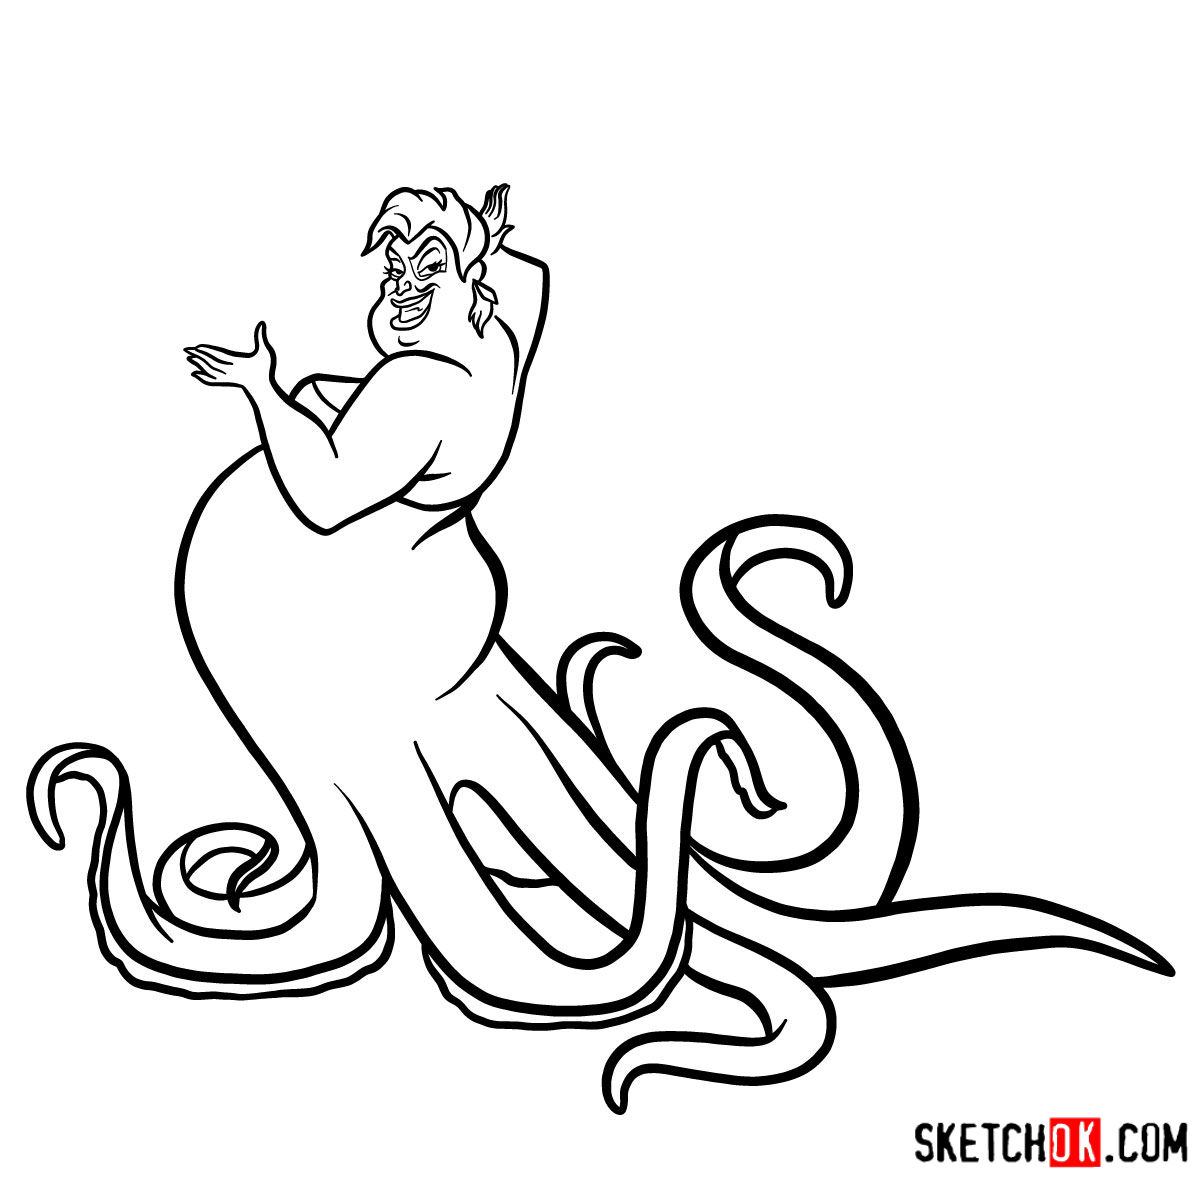 How to draw Ursula